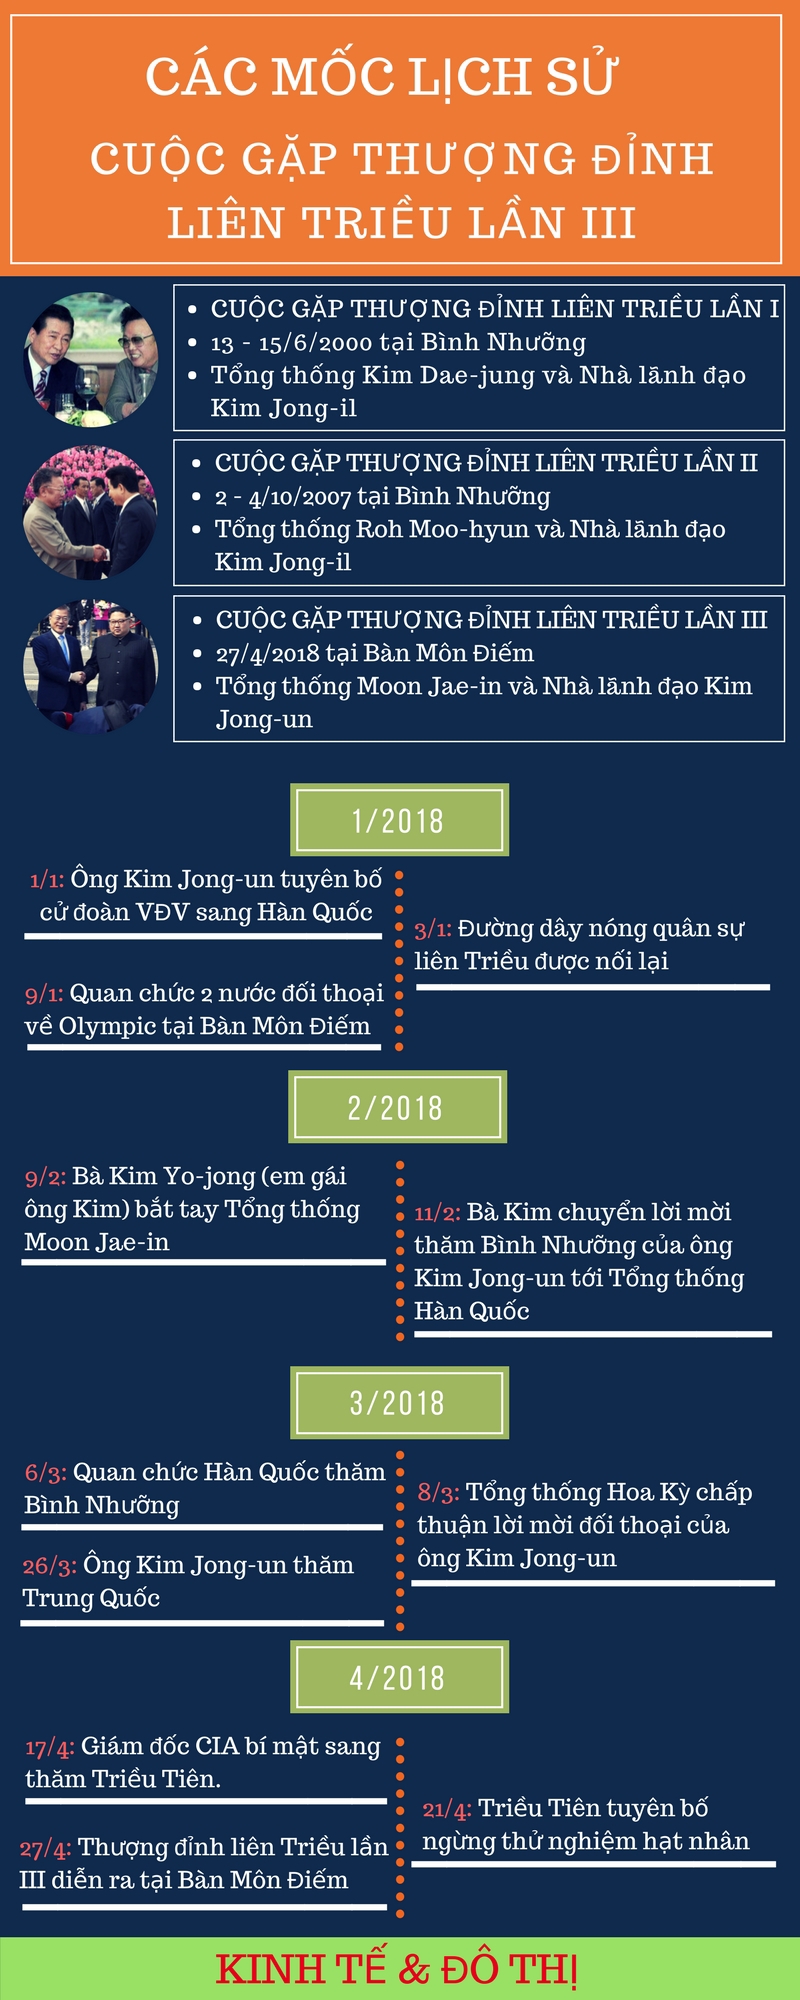 Infographic: Những dấu mốc lịch sử dẫn đến hội nghị thượng đỉnh liên Triều lần III - Ảnh 1